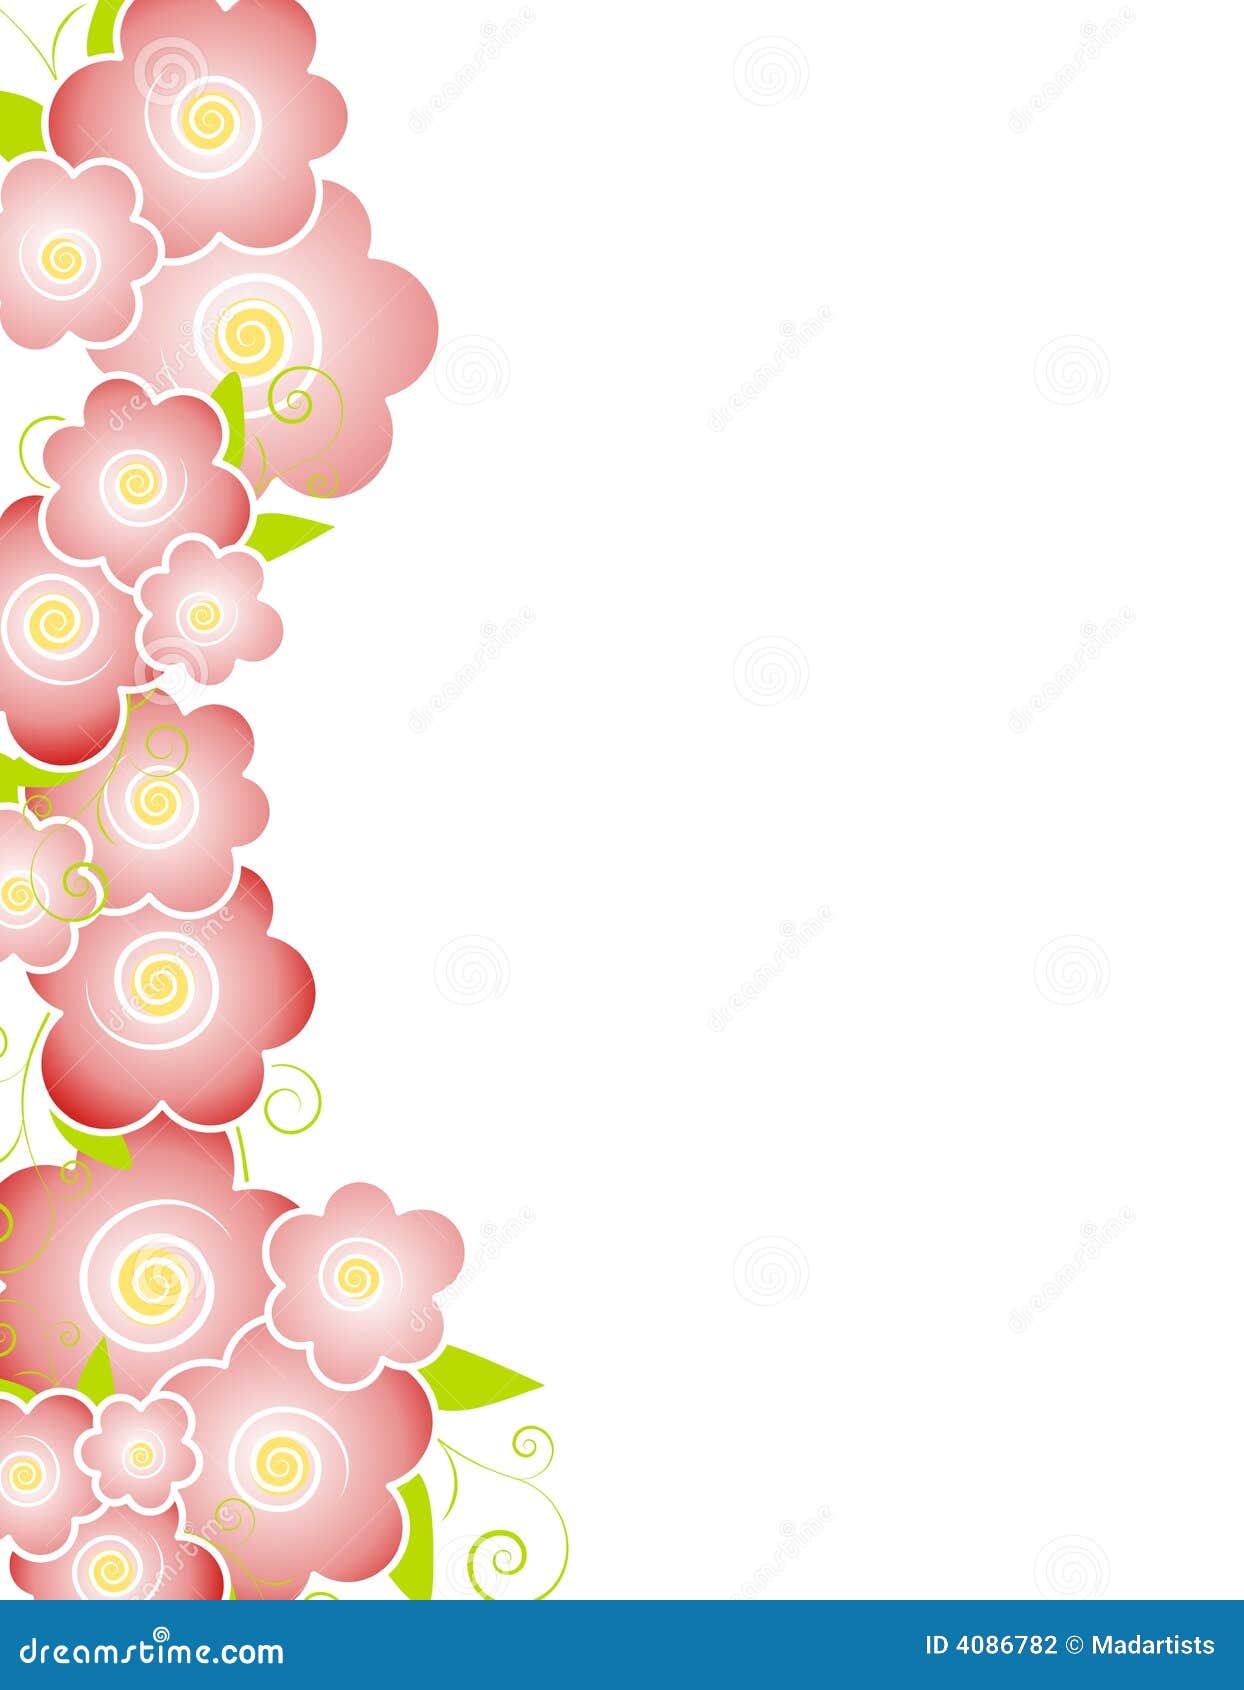 Lấy cảm hứng từ mùa xuân, hình nền hoa hồng mùa xuân với viền hình nền hồng sẽ mang đến cho bạn một bức tranh tươi sáng, đẹp mắt. Hãy truy cập ngay để xem thêm chi tiết và cùng thưởng thức nhé!